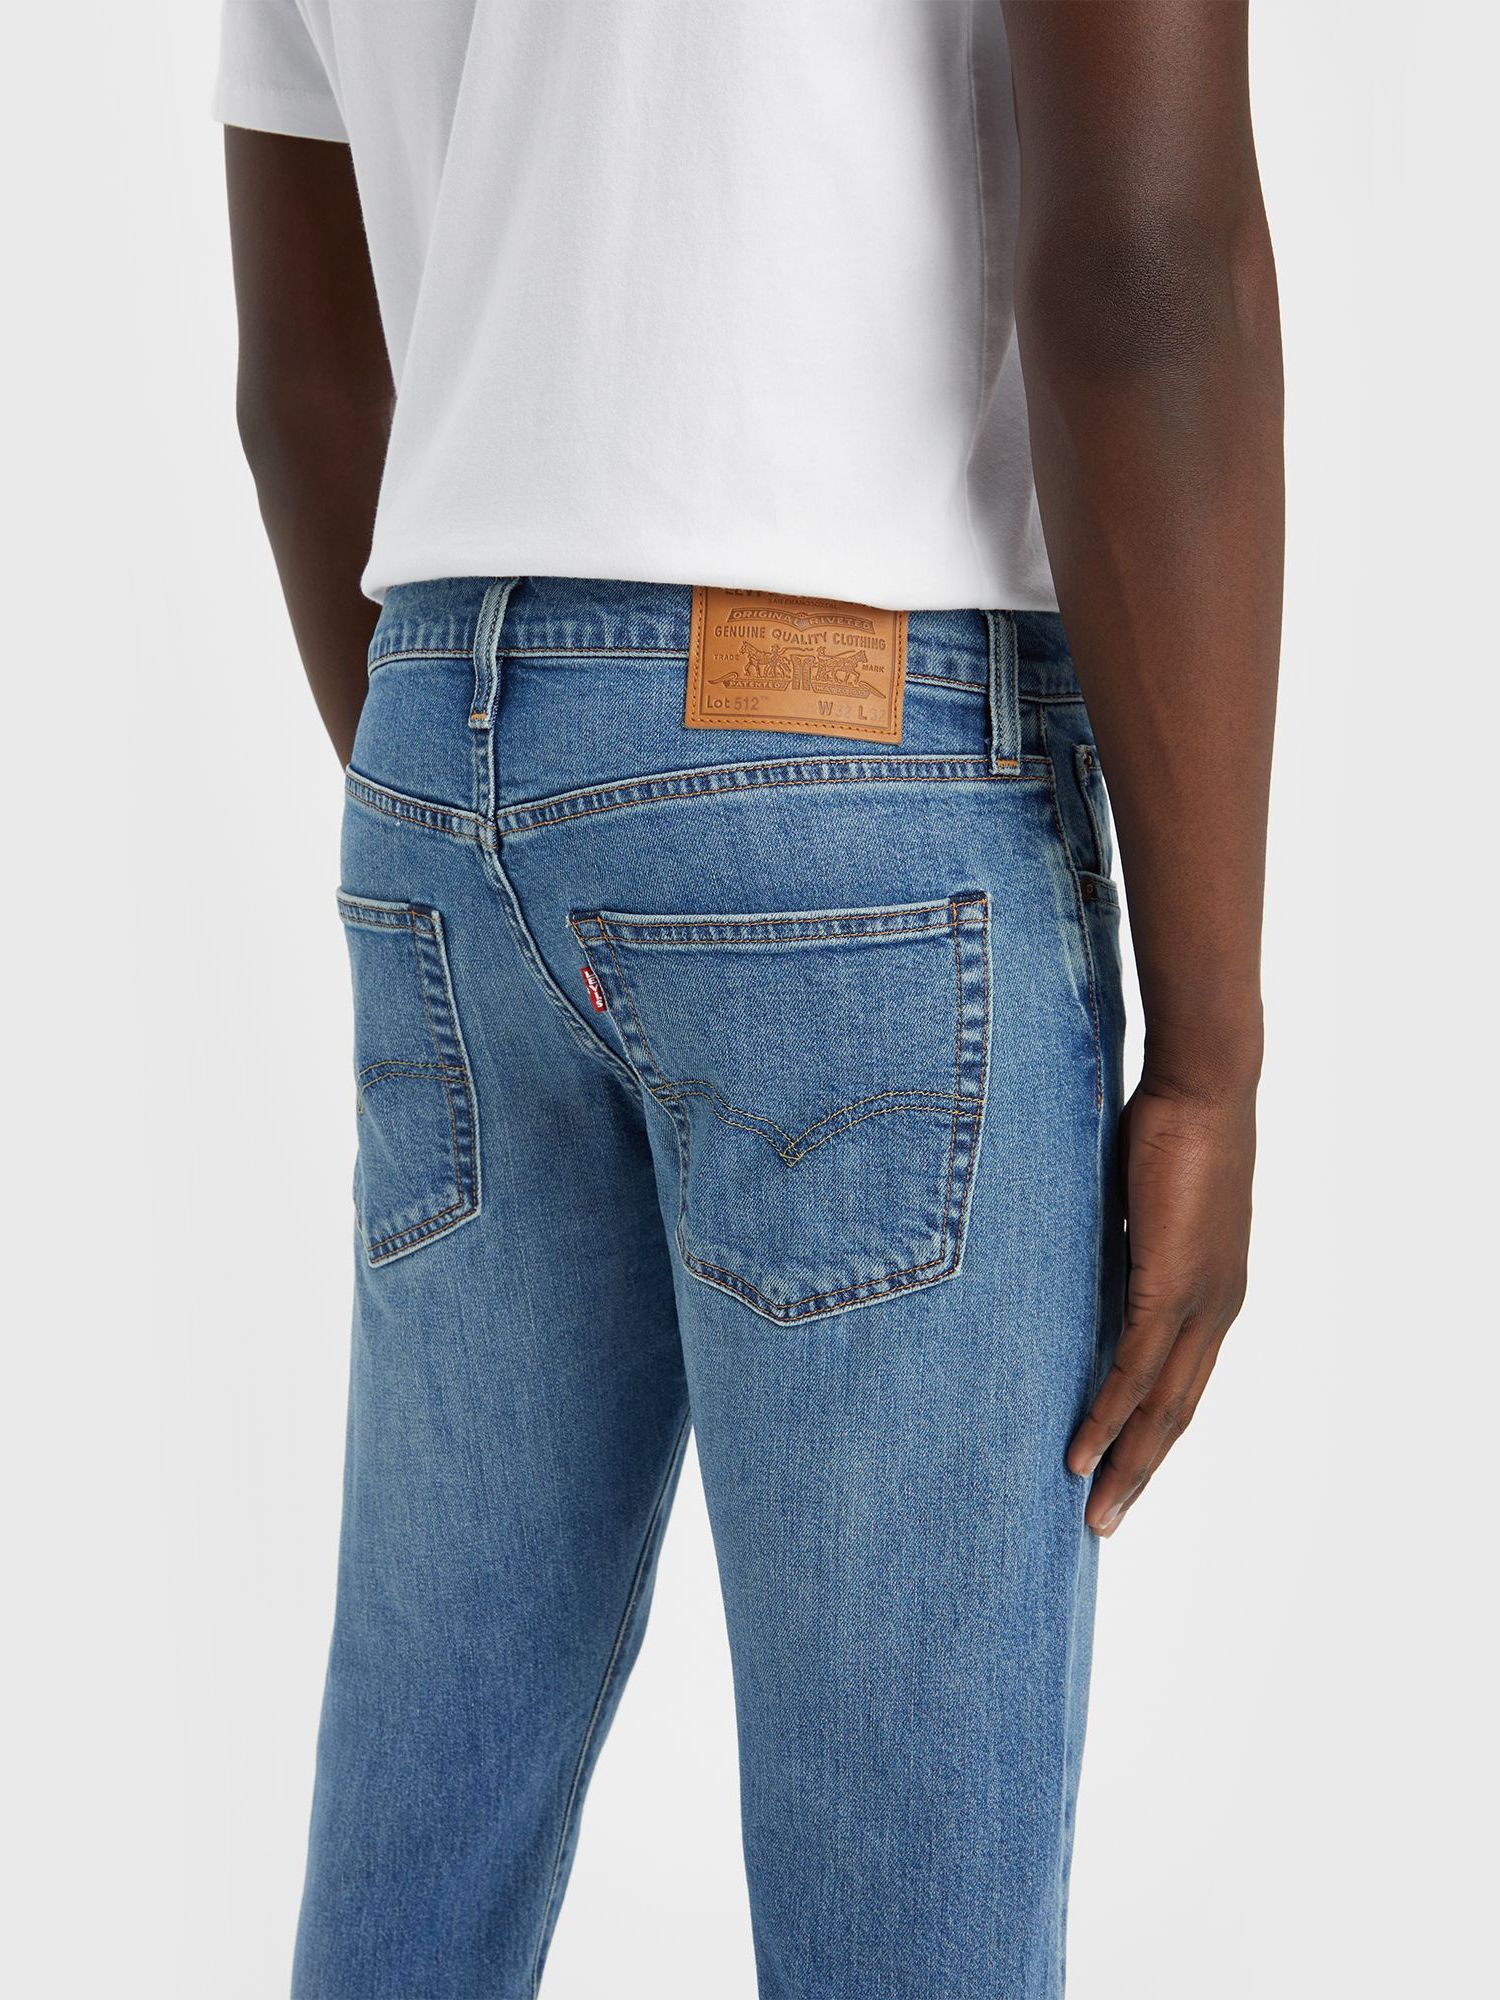 Levi's 512 Slim Tapered Jeans, Z7016  Indigo, 32R